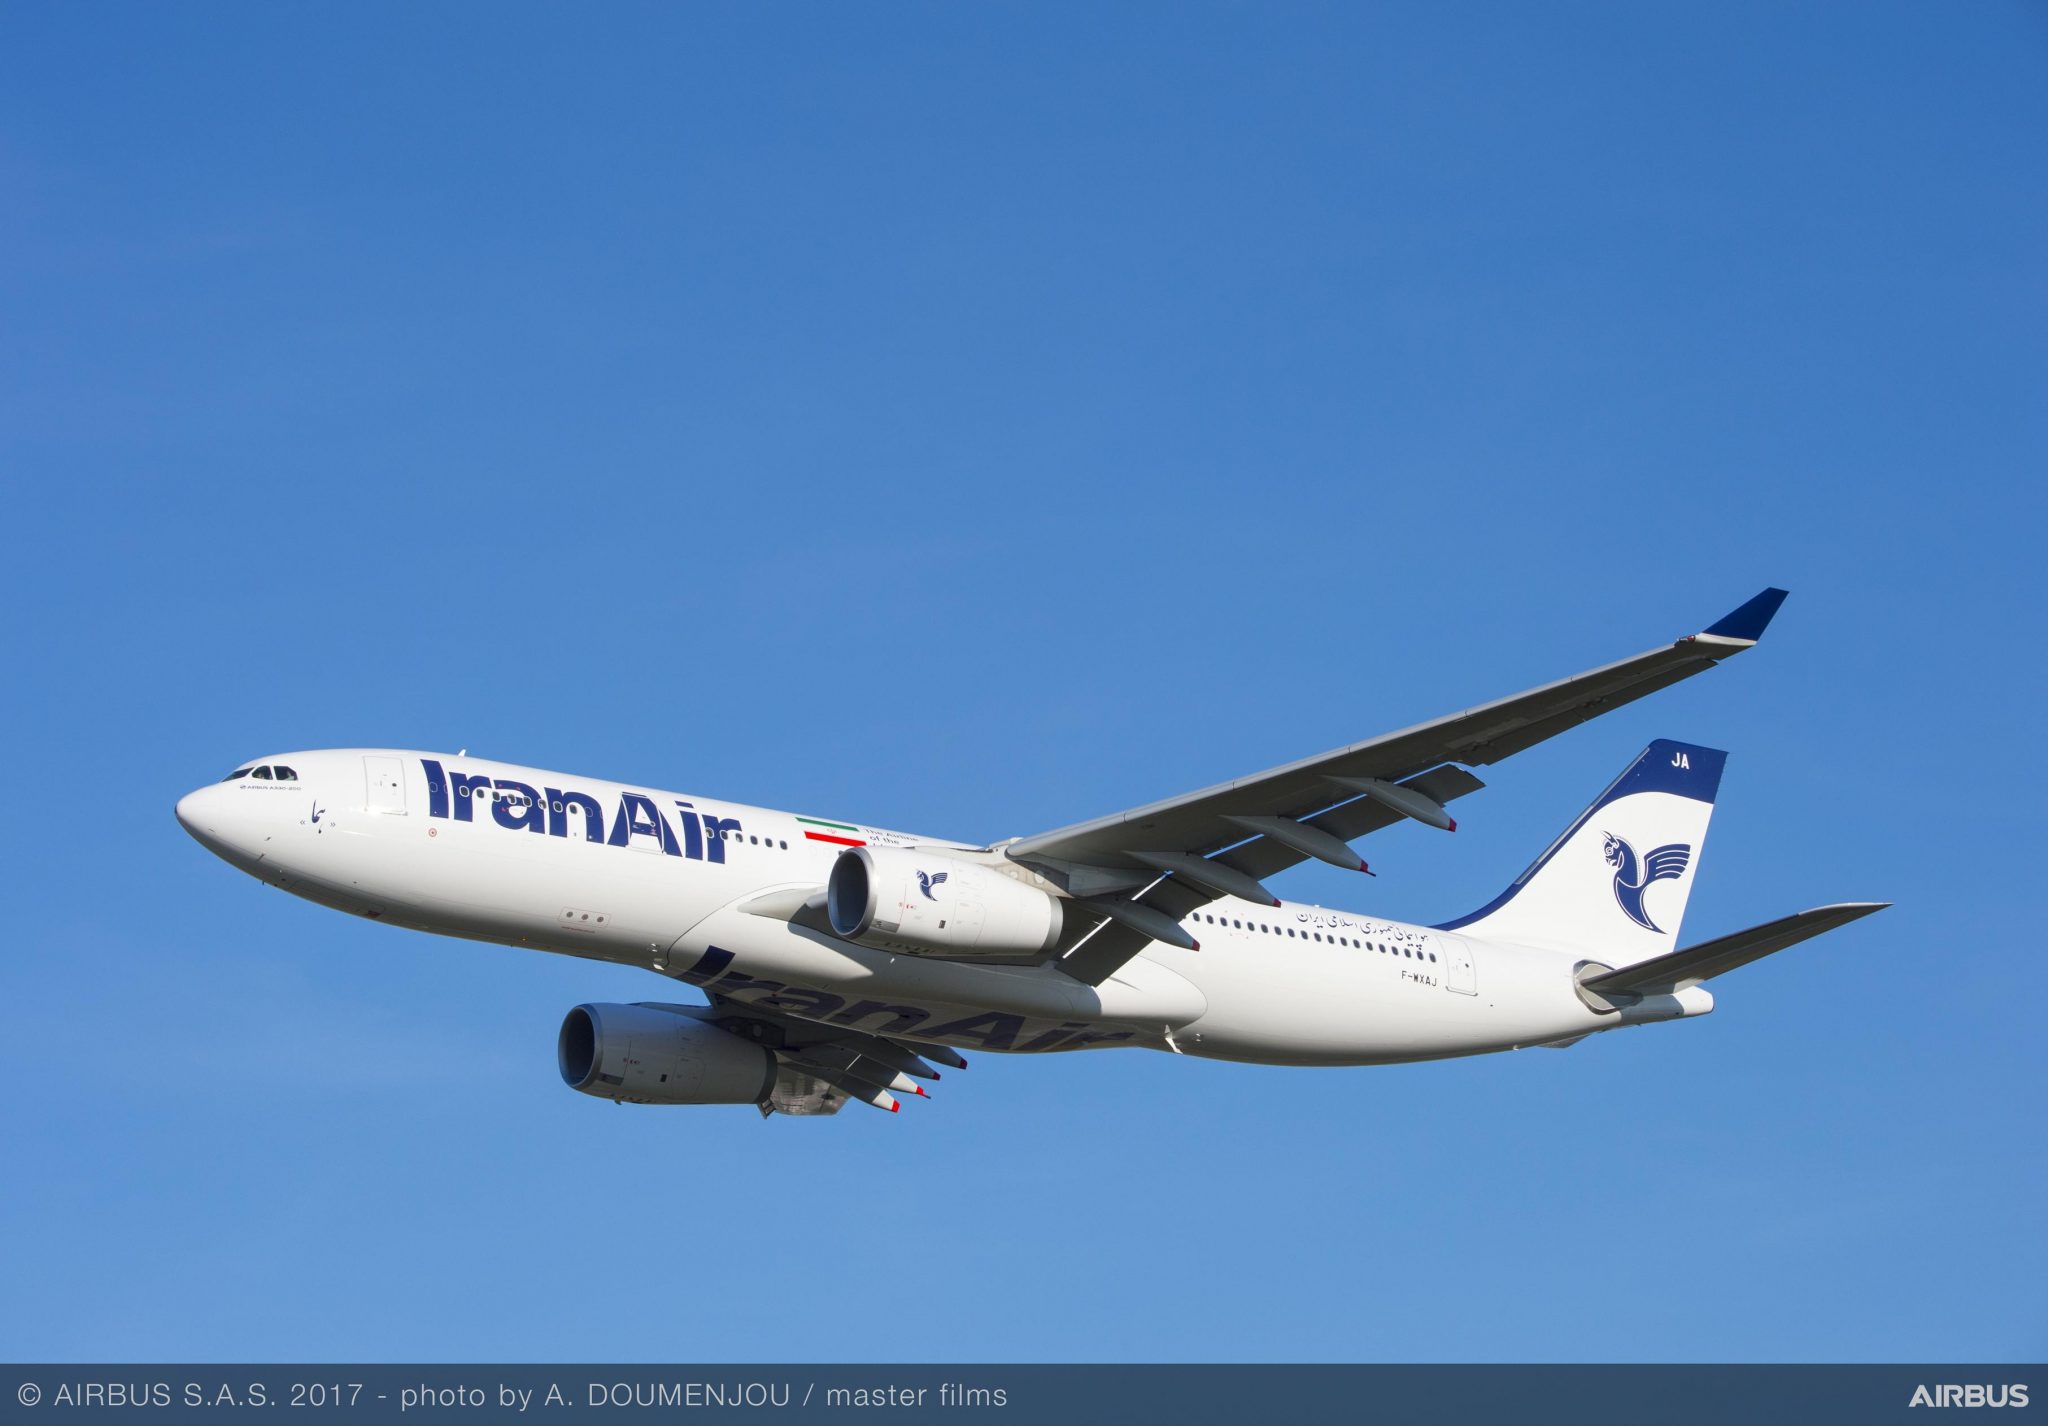 Iran Air to expand capacity between Tehran and London